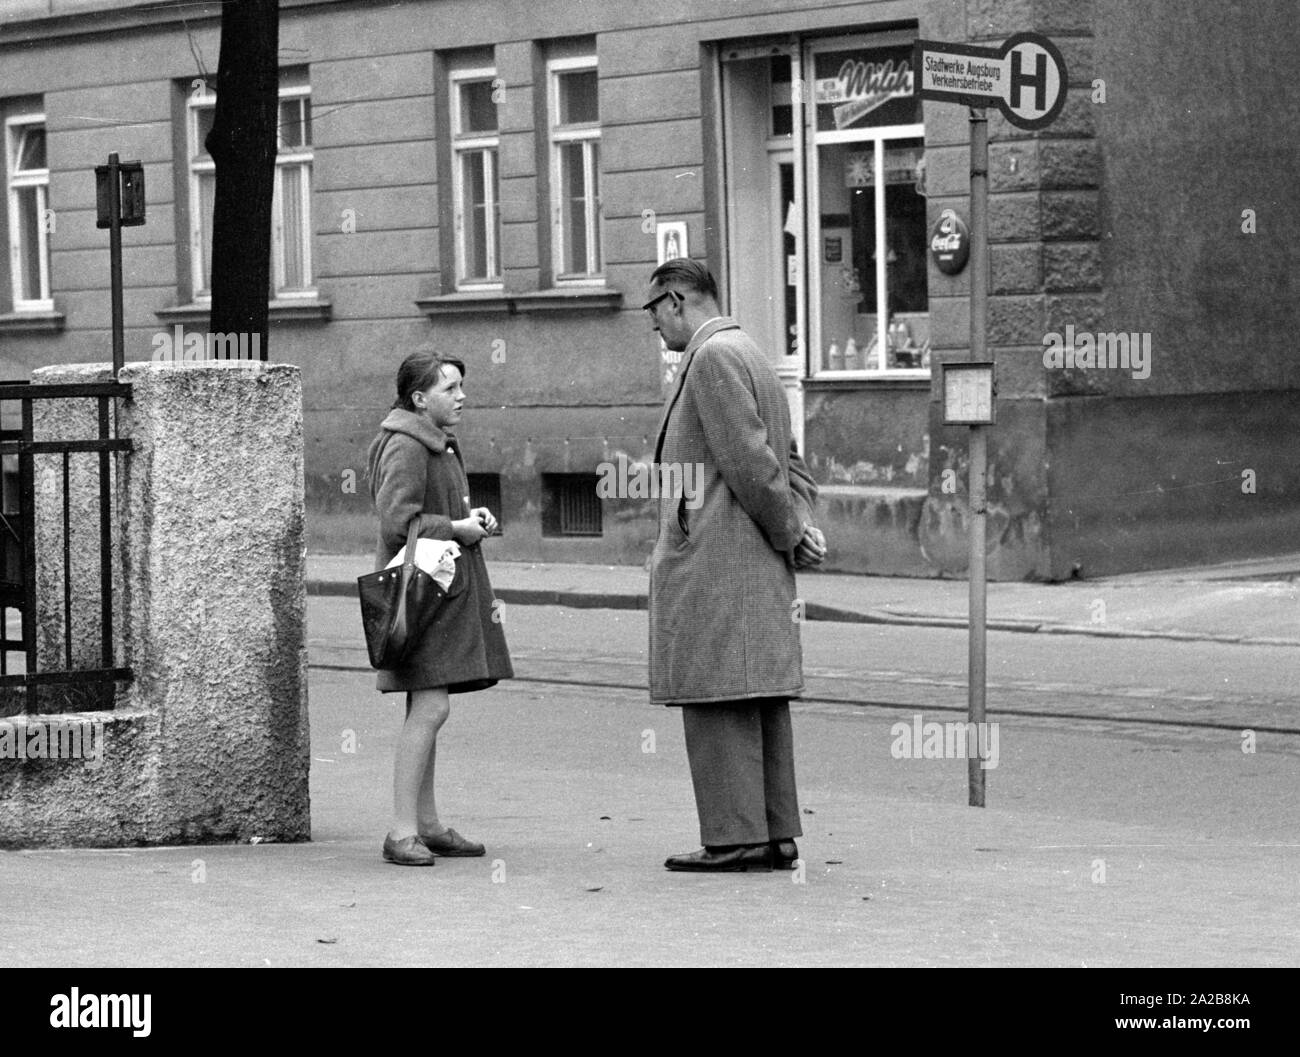 Une jeune fille est abordée par un inconnu, un policier en civil, sur le chemin de l'école. La photo a été prise dans le cadre d'une expérience d'enlèvement d'enfant de la Kriminalpolizei Augsbourg. Banque D'Images